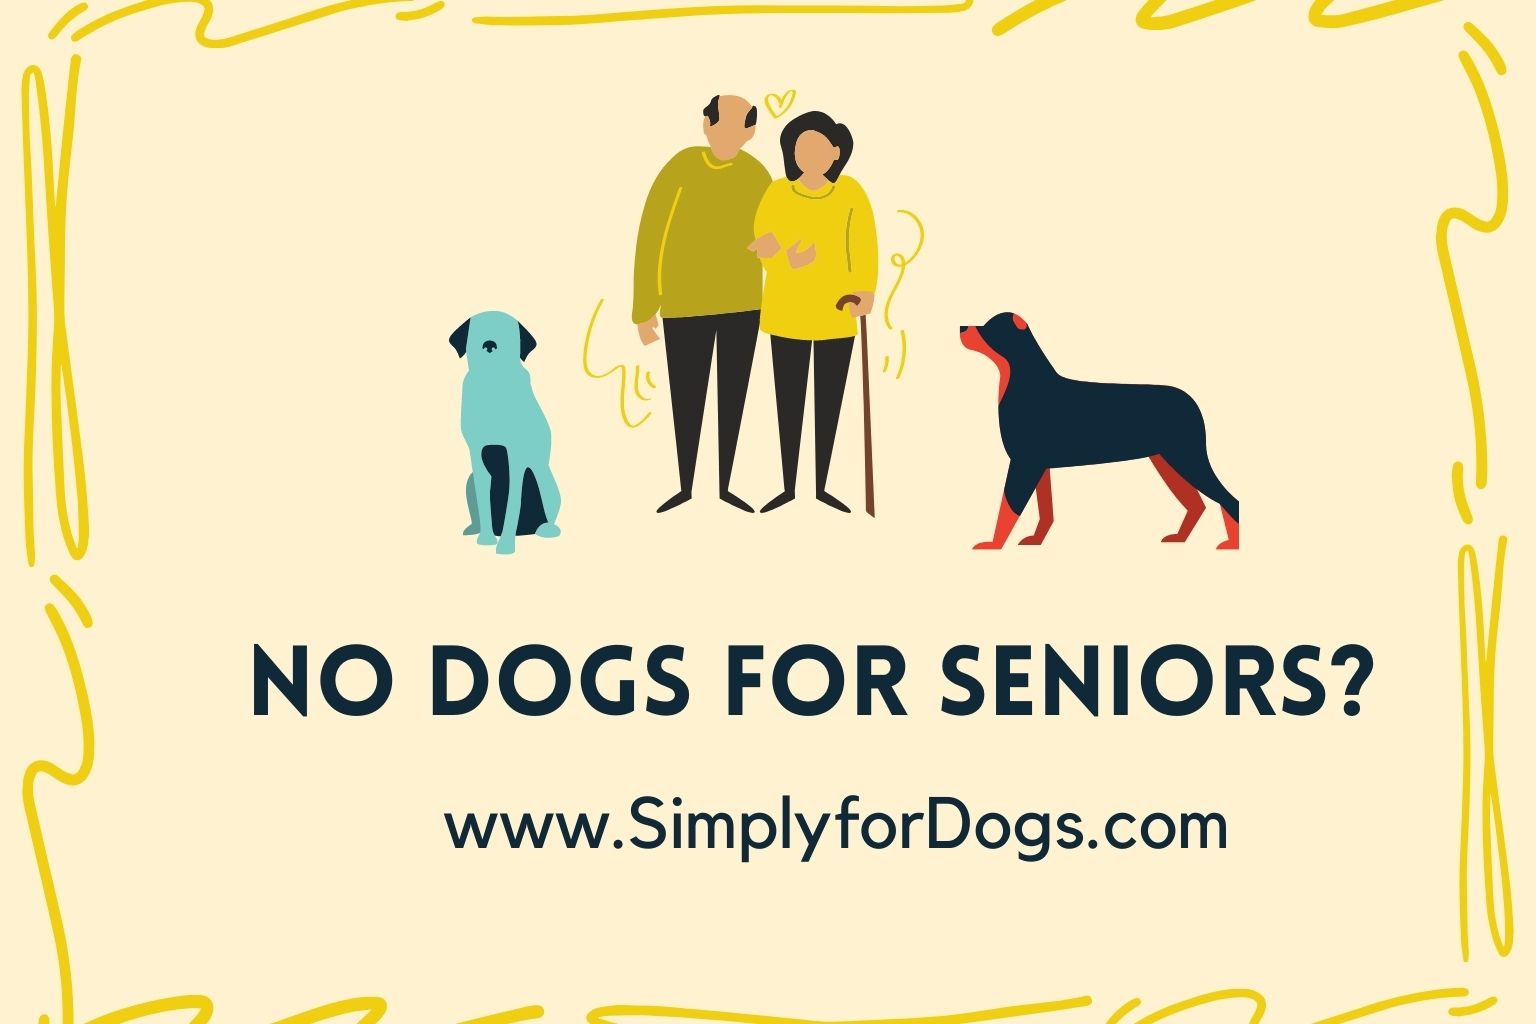 Dogs for Seniors